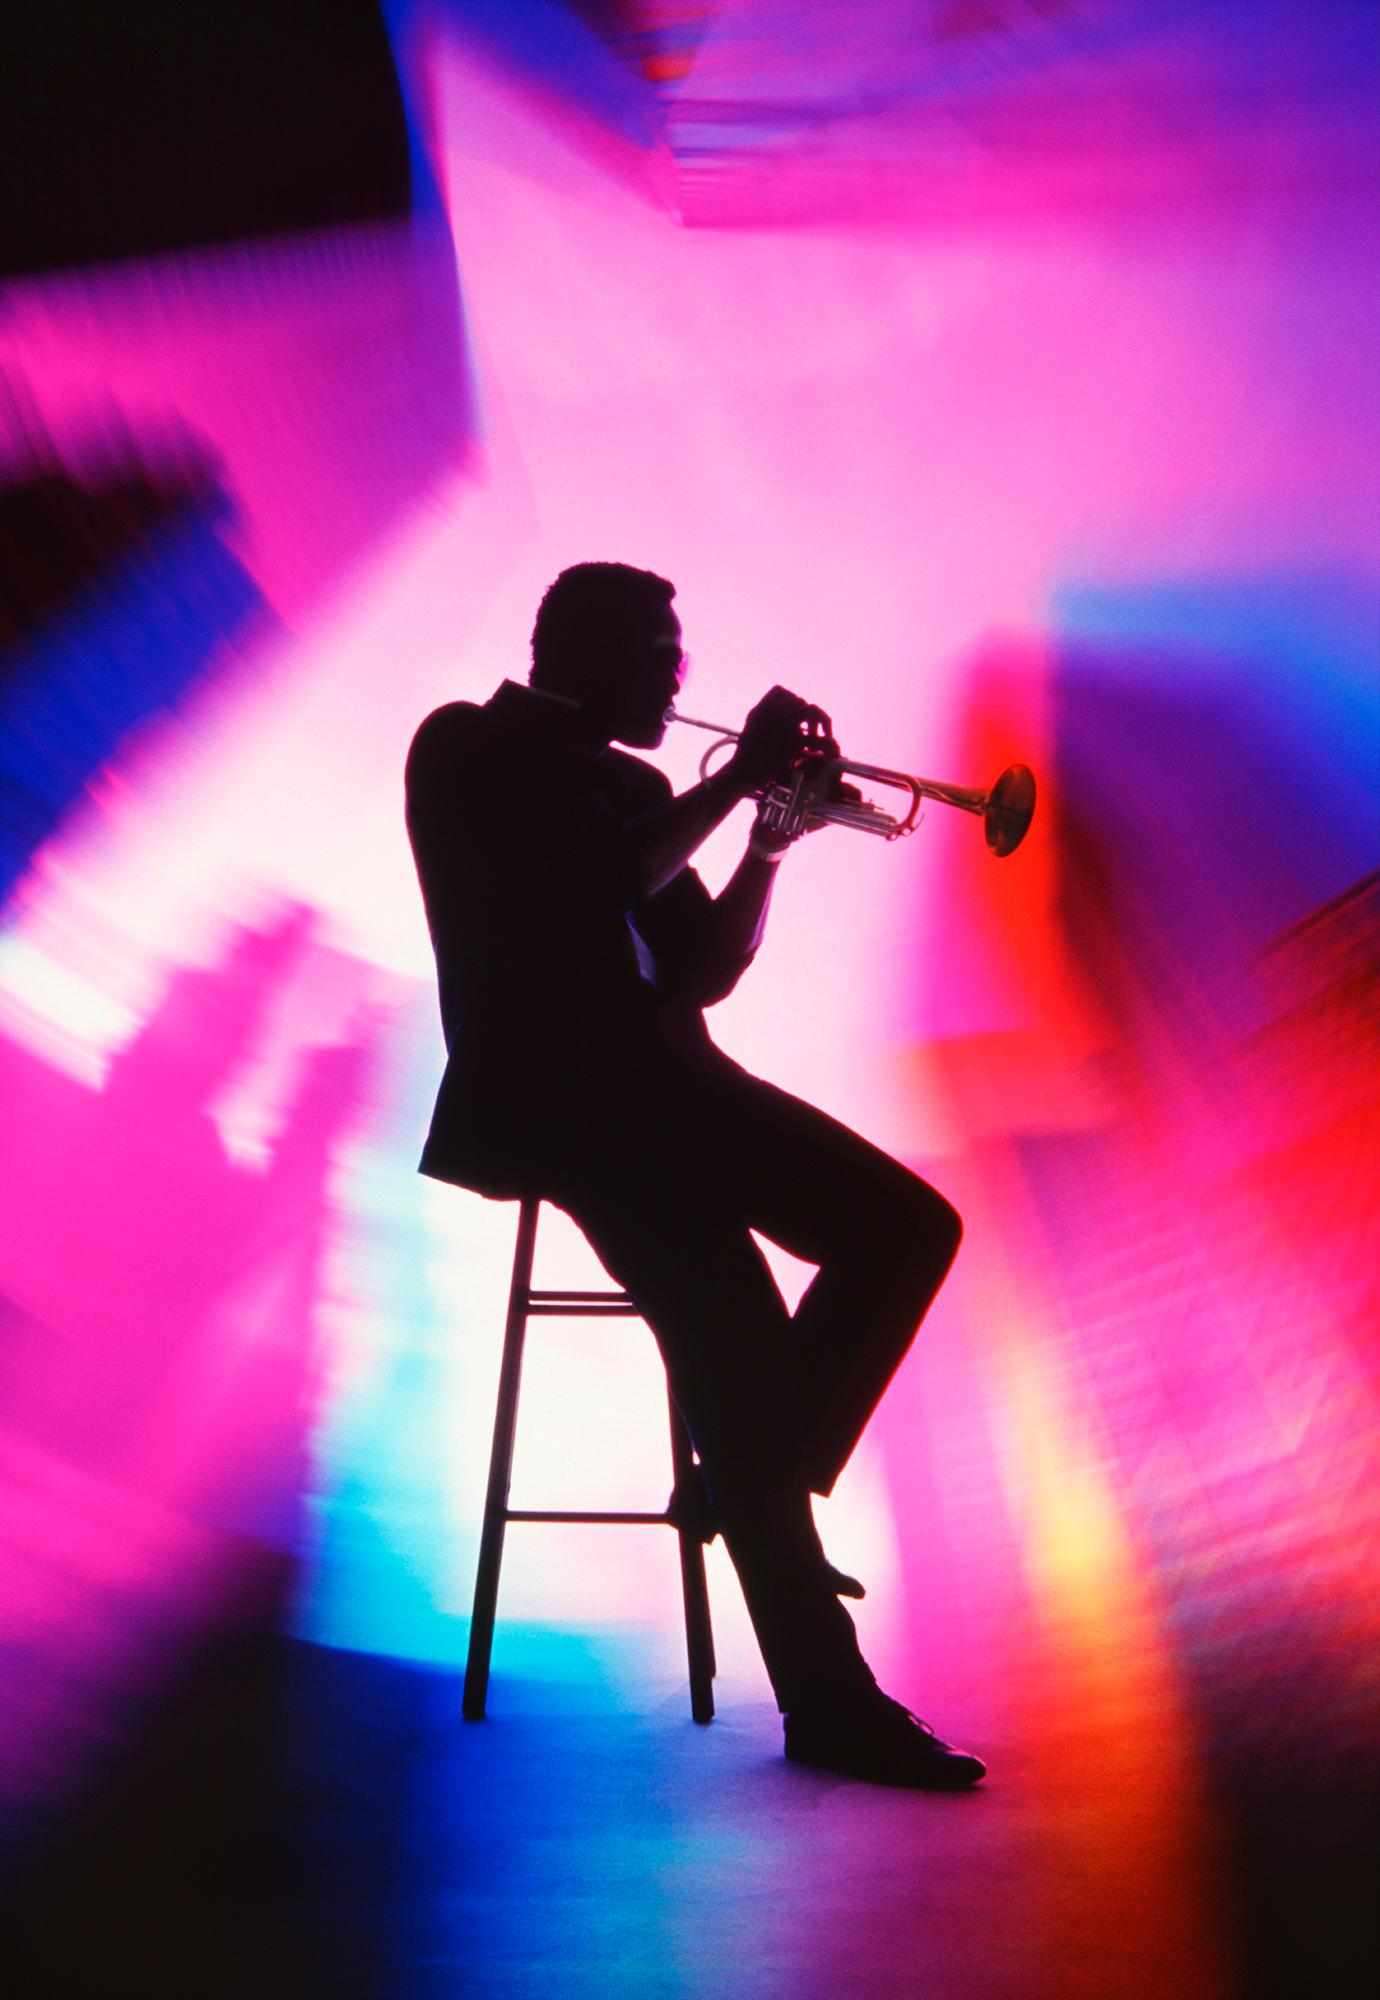 Portrait Photograph Mitchell Funk - Joueur de trompettes : arc-en-ciel de couleurs pleine d'âme